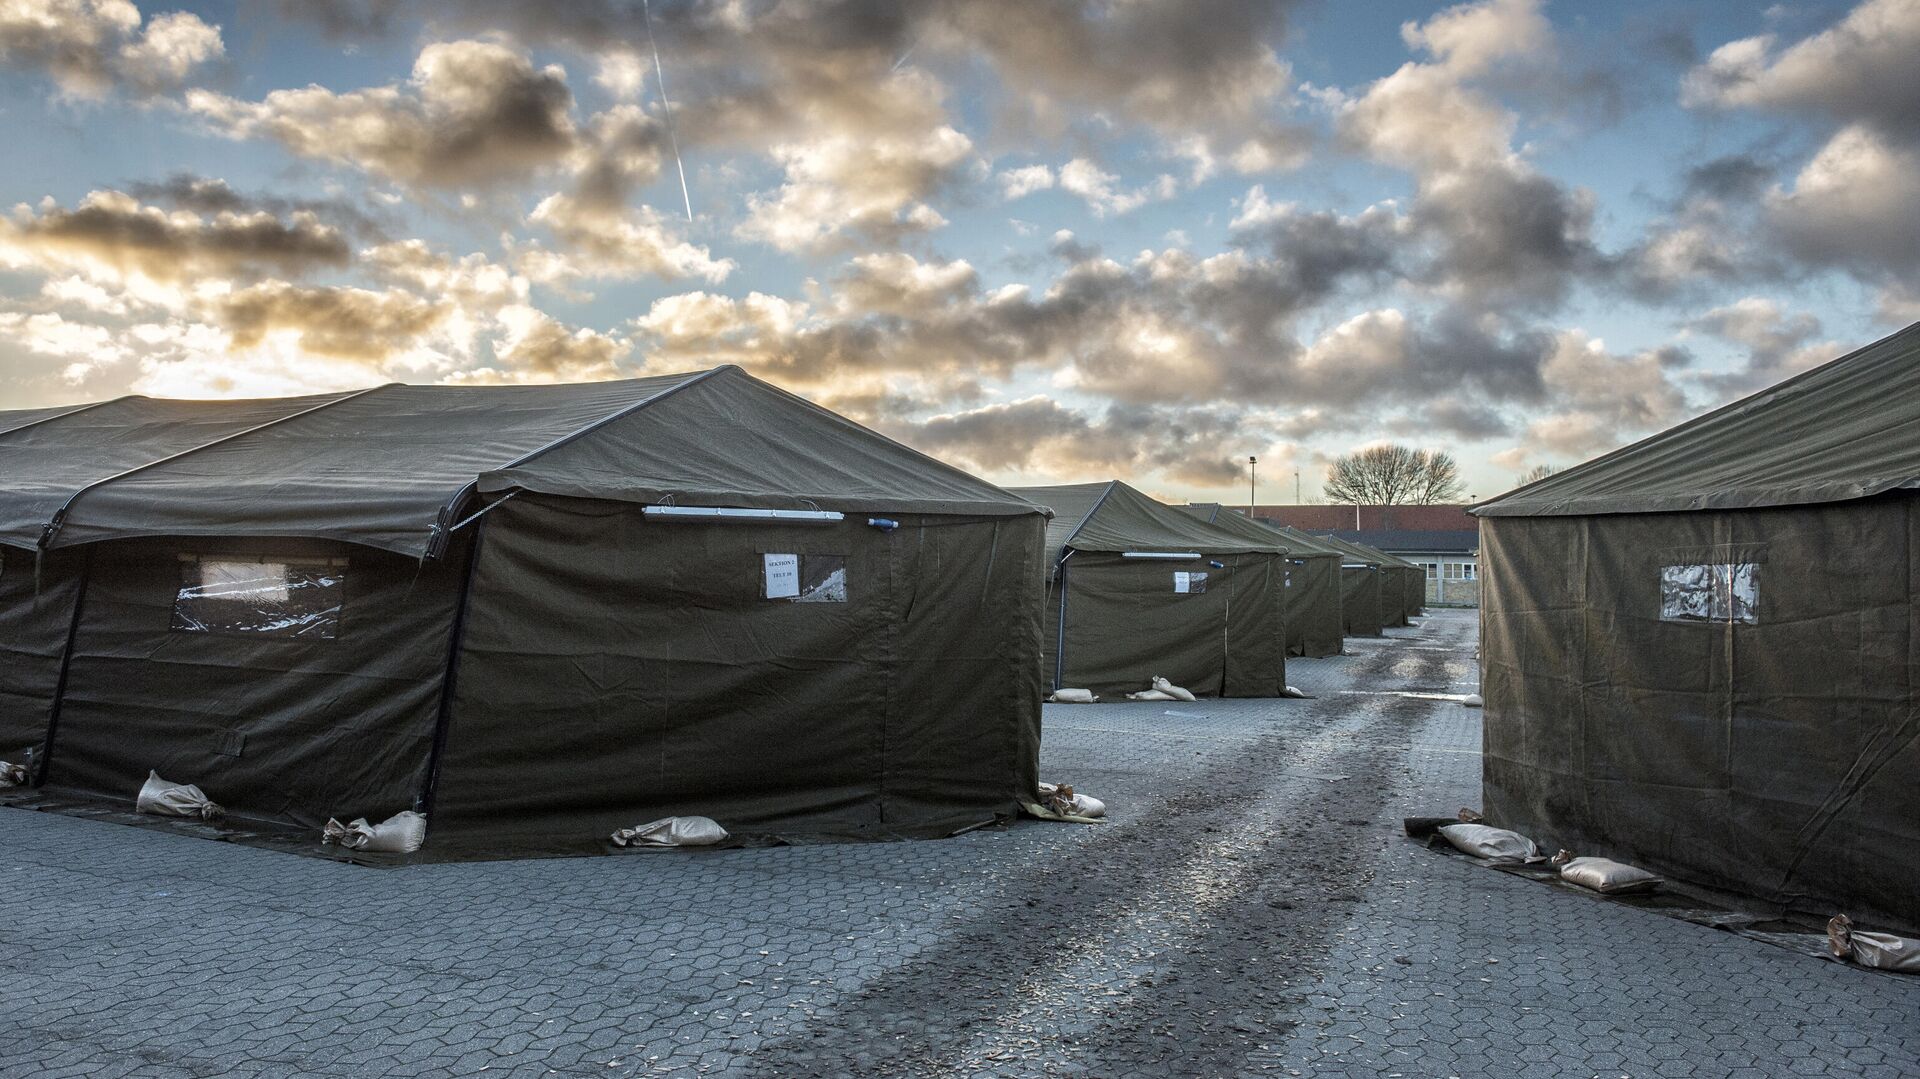 Лагерь беженцев в 100 км от Копенгагена, Дания  - РИА Новости, 1920, 07.04.2021